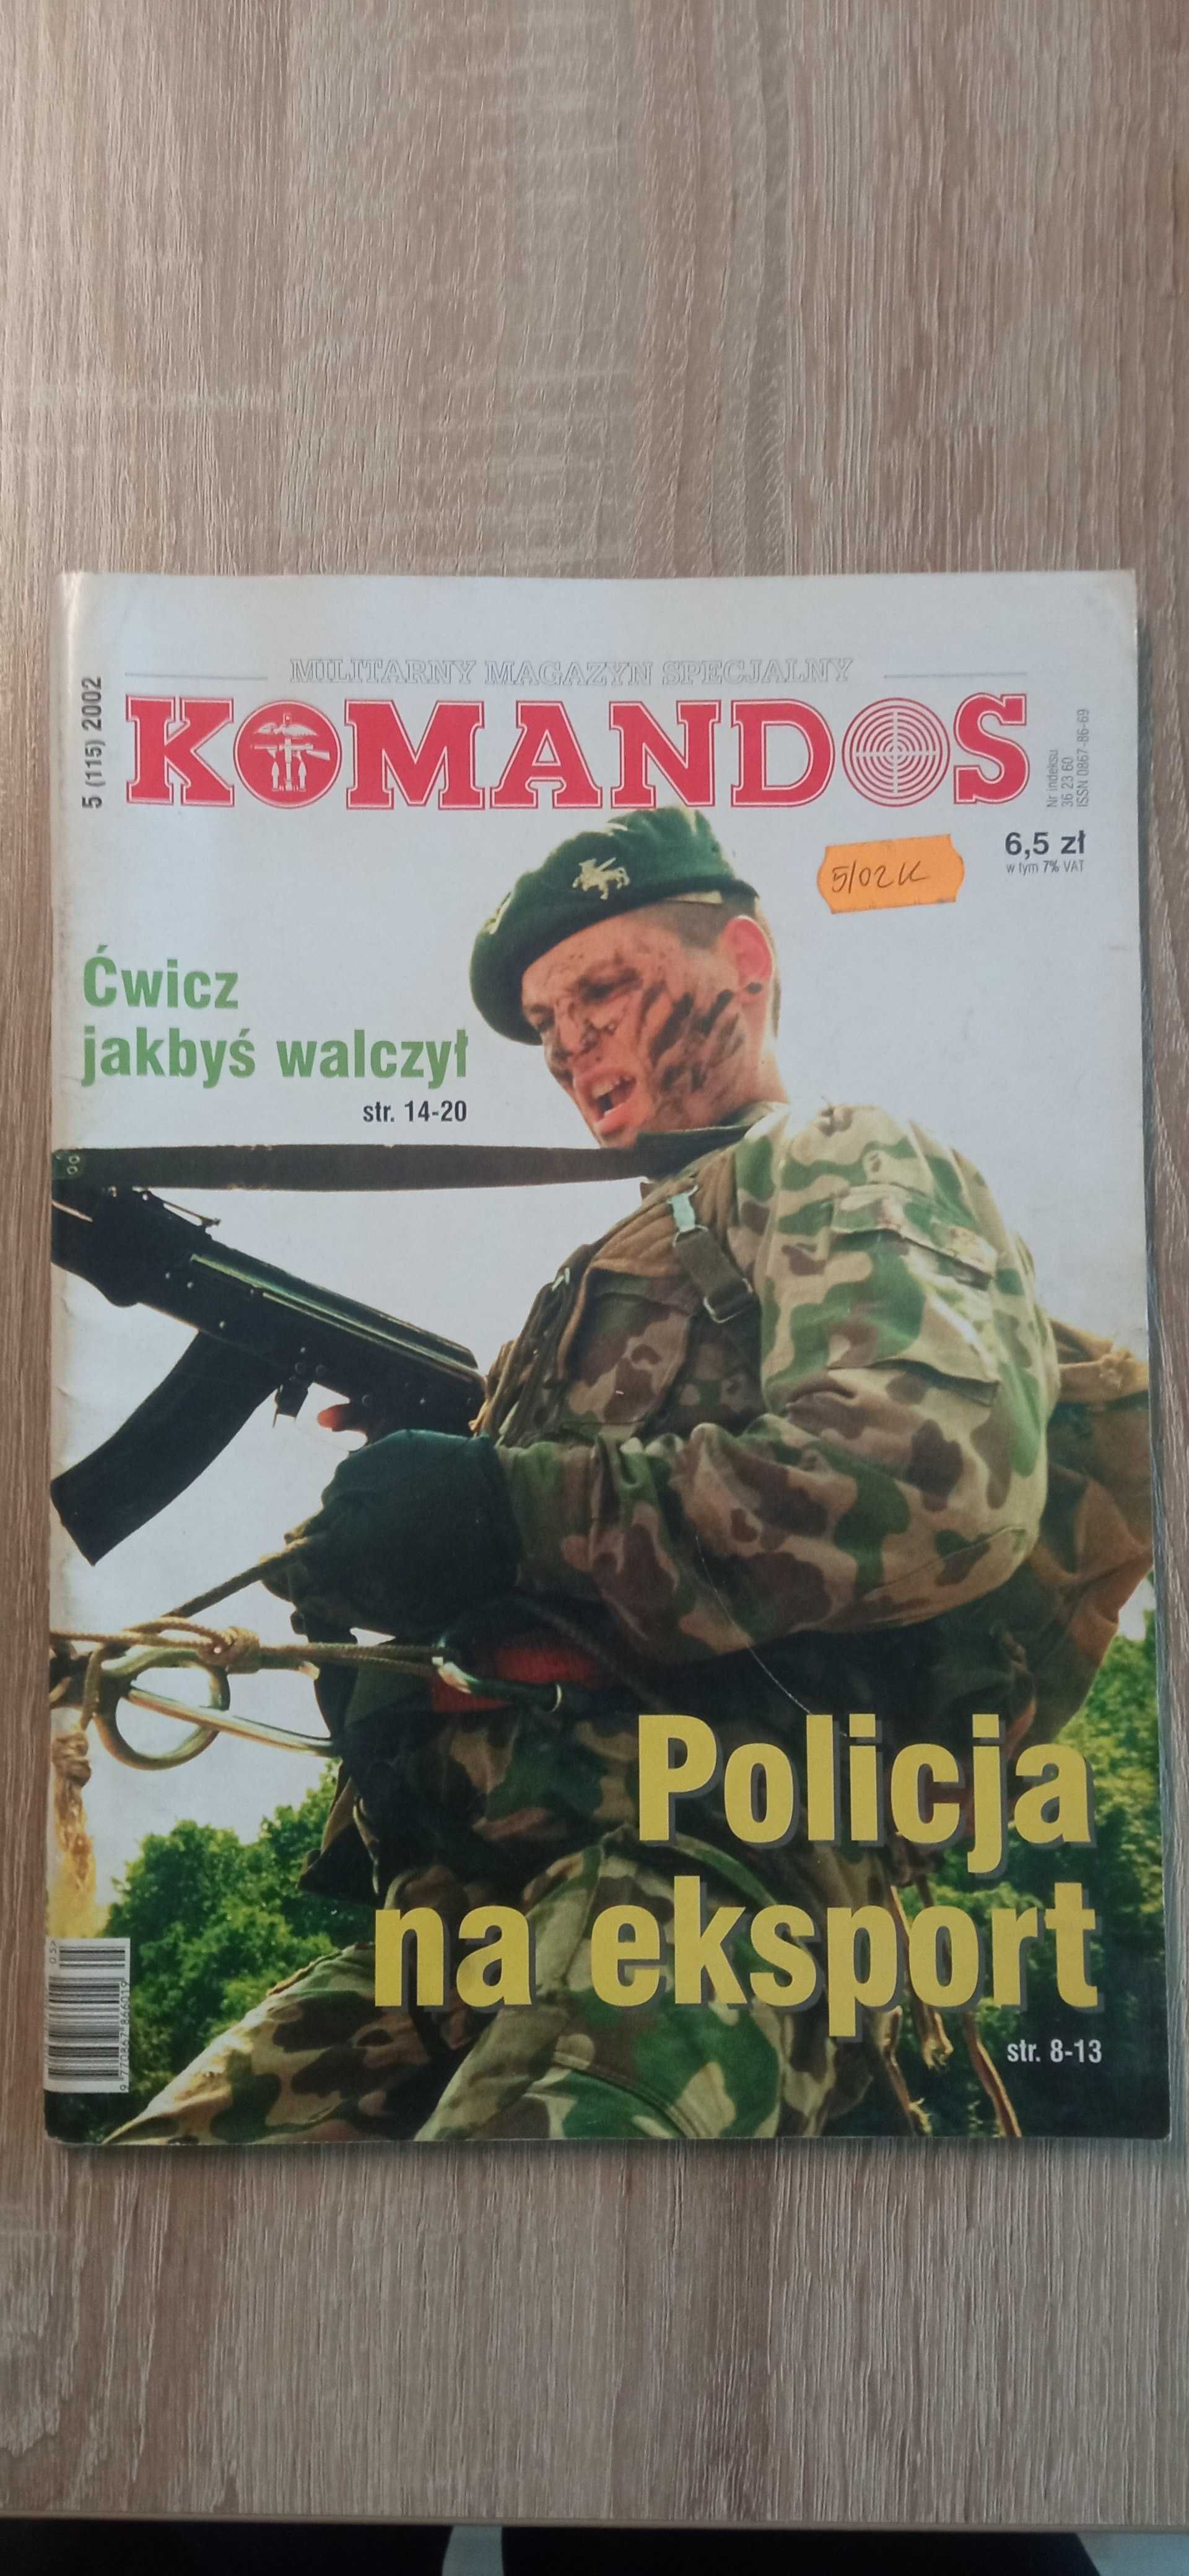 Militarny magazyn specjalny Komandos nr 5/2002 i 11/2002